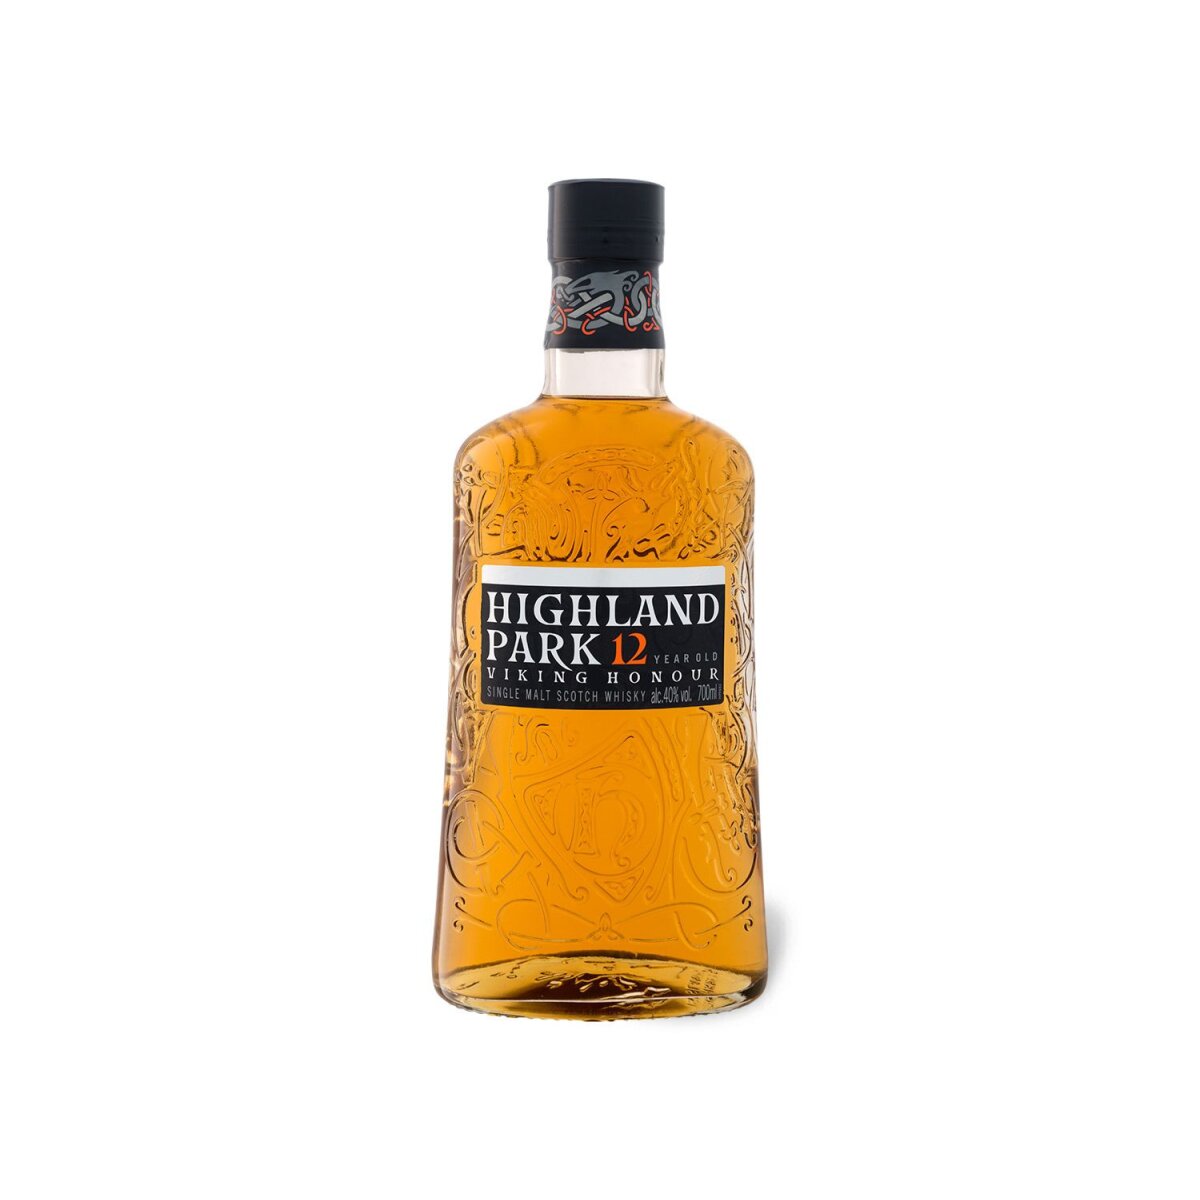 Years 12 25,99 Park Single Highland mit HONOUR Scotch Malt 40% Vol, VIKING Whisky € Geschenkbox